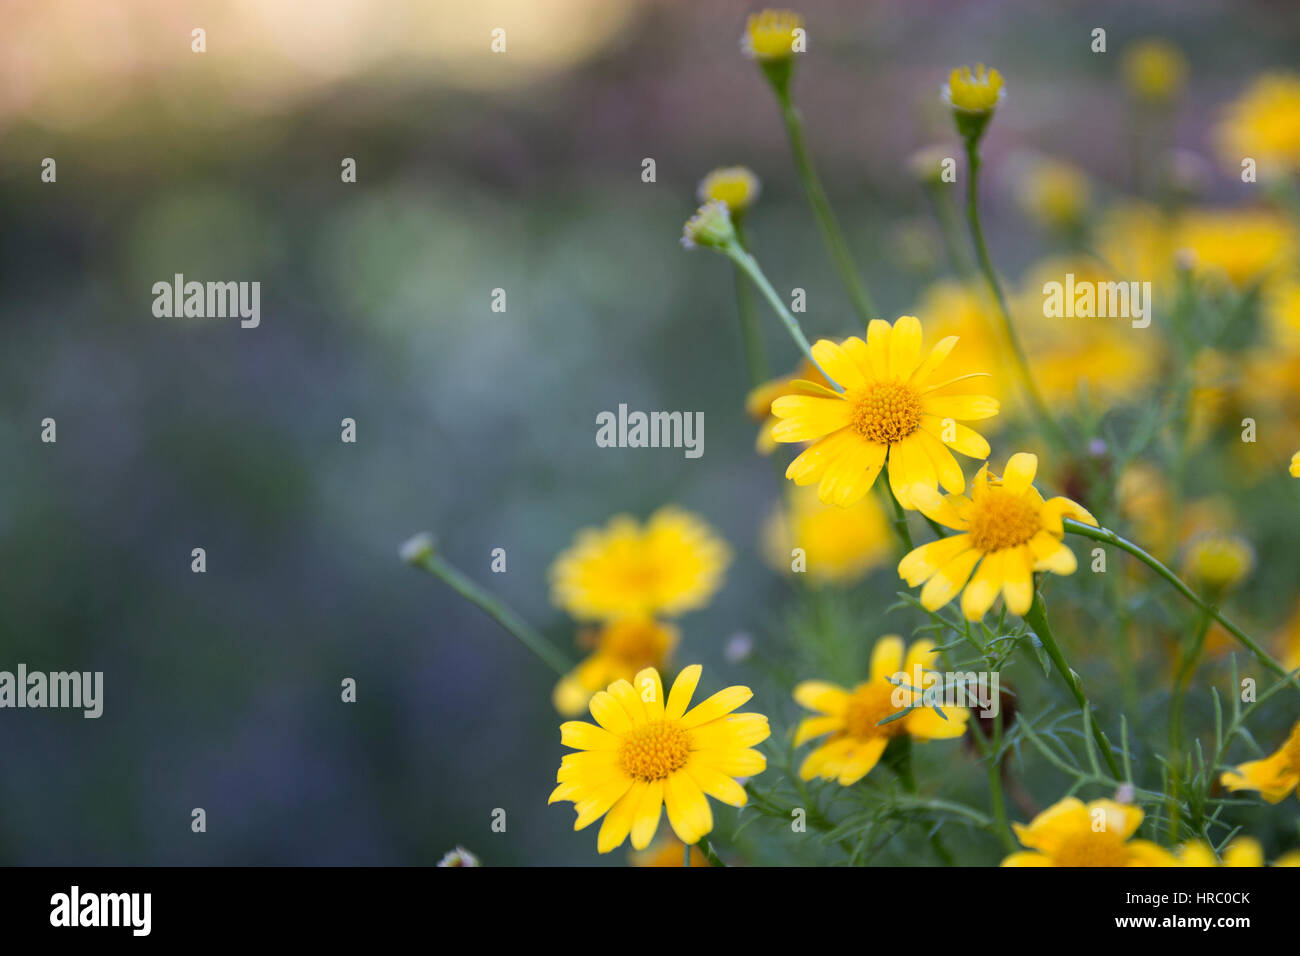 abstrakte Frühling Blumen Hintergrund unscharf kalten grünen Rasen und gelbe Blüte nah, selektiven Fokus verschwommen Park auf Hintergrund kurz Schärfentiefe Stockfoto